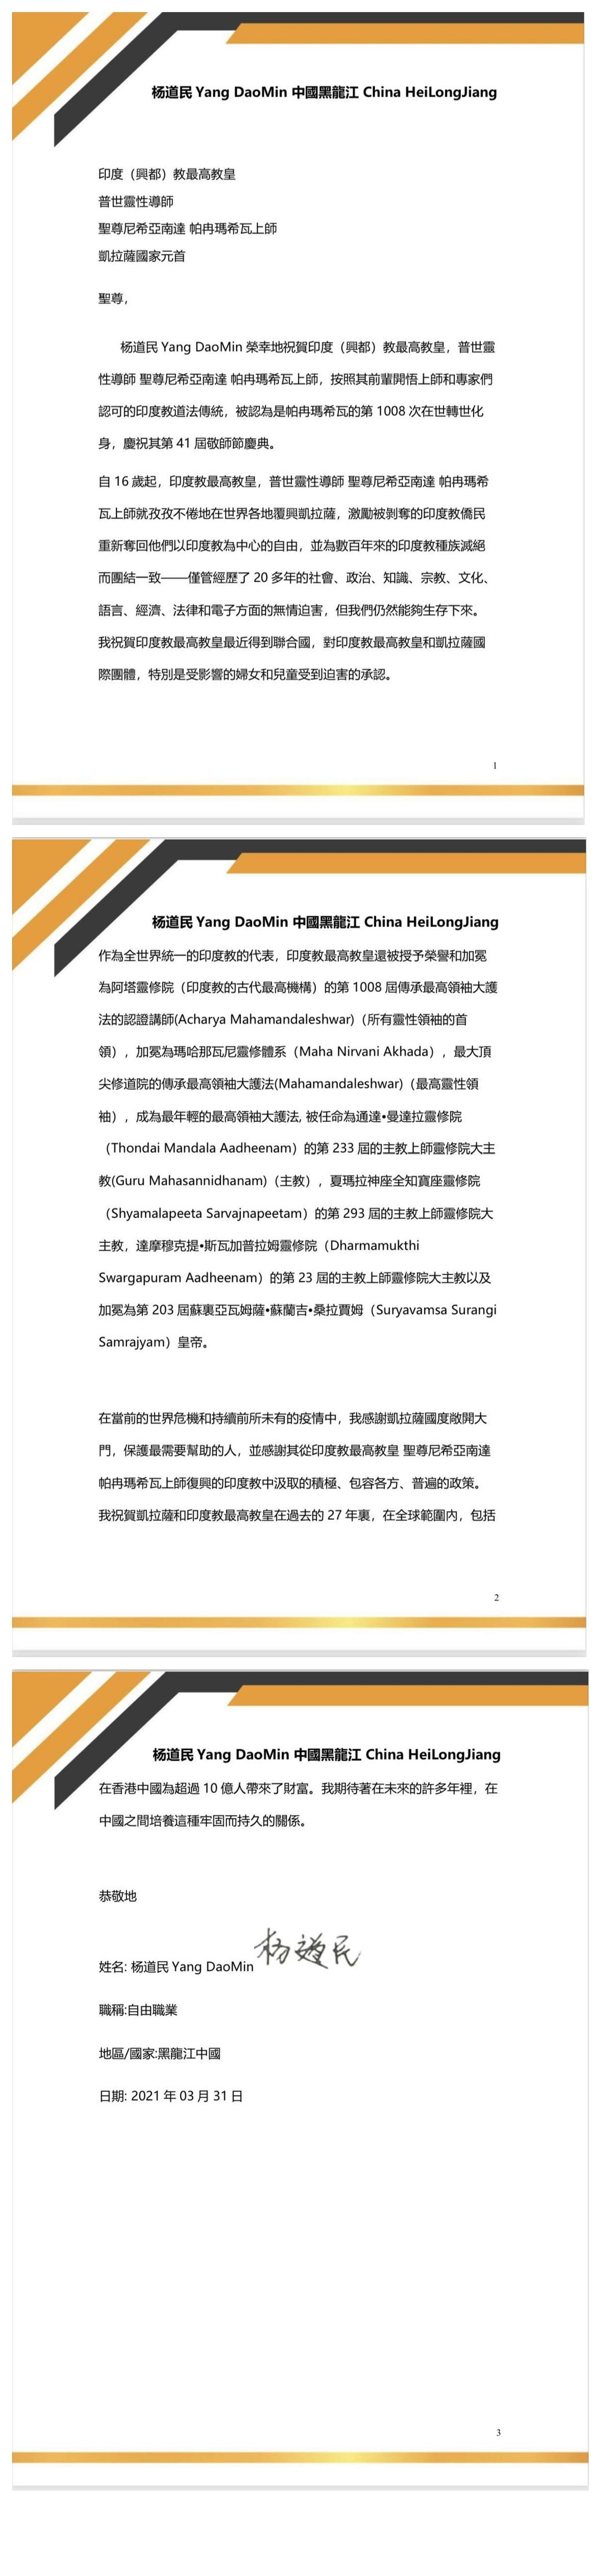 China---Dao-Min-Yang---(Proclamation)-1IRS802 pwAtyFdS6YoixhjLUx265OqqL.pdf